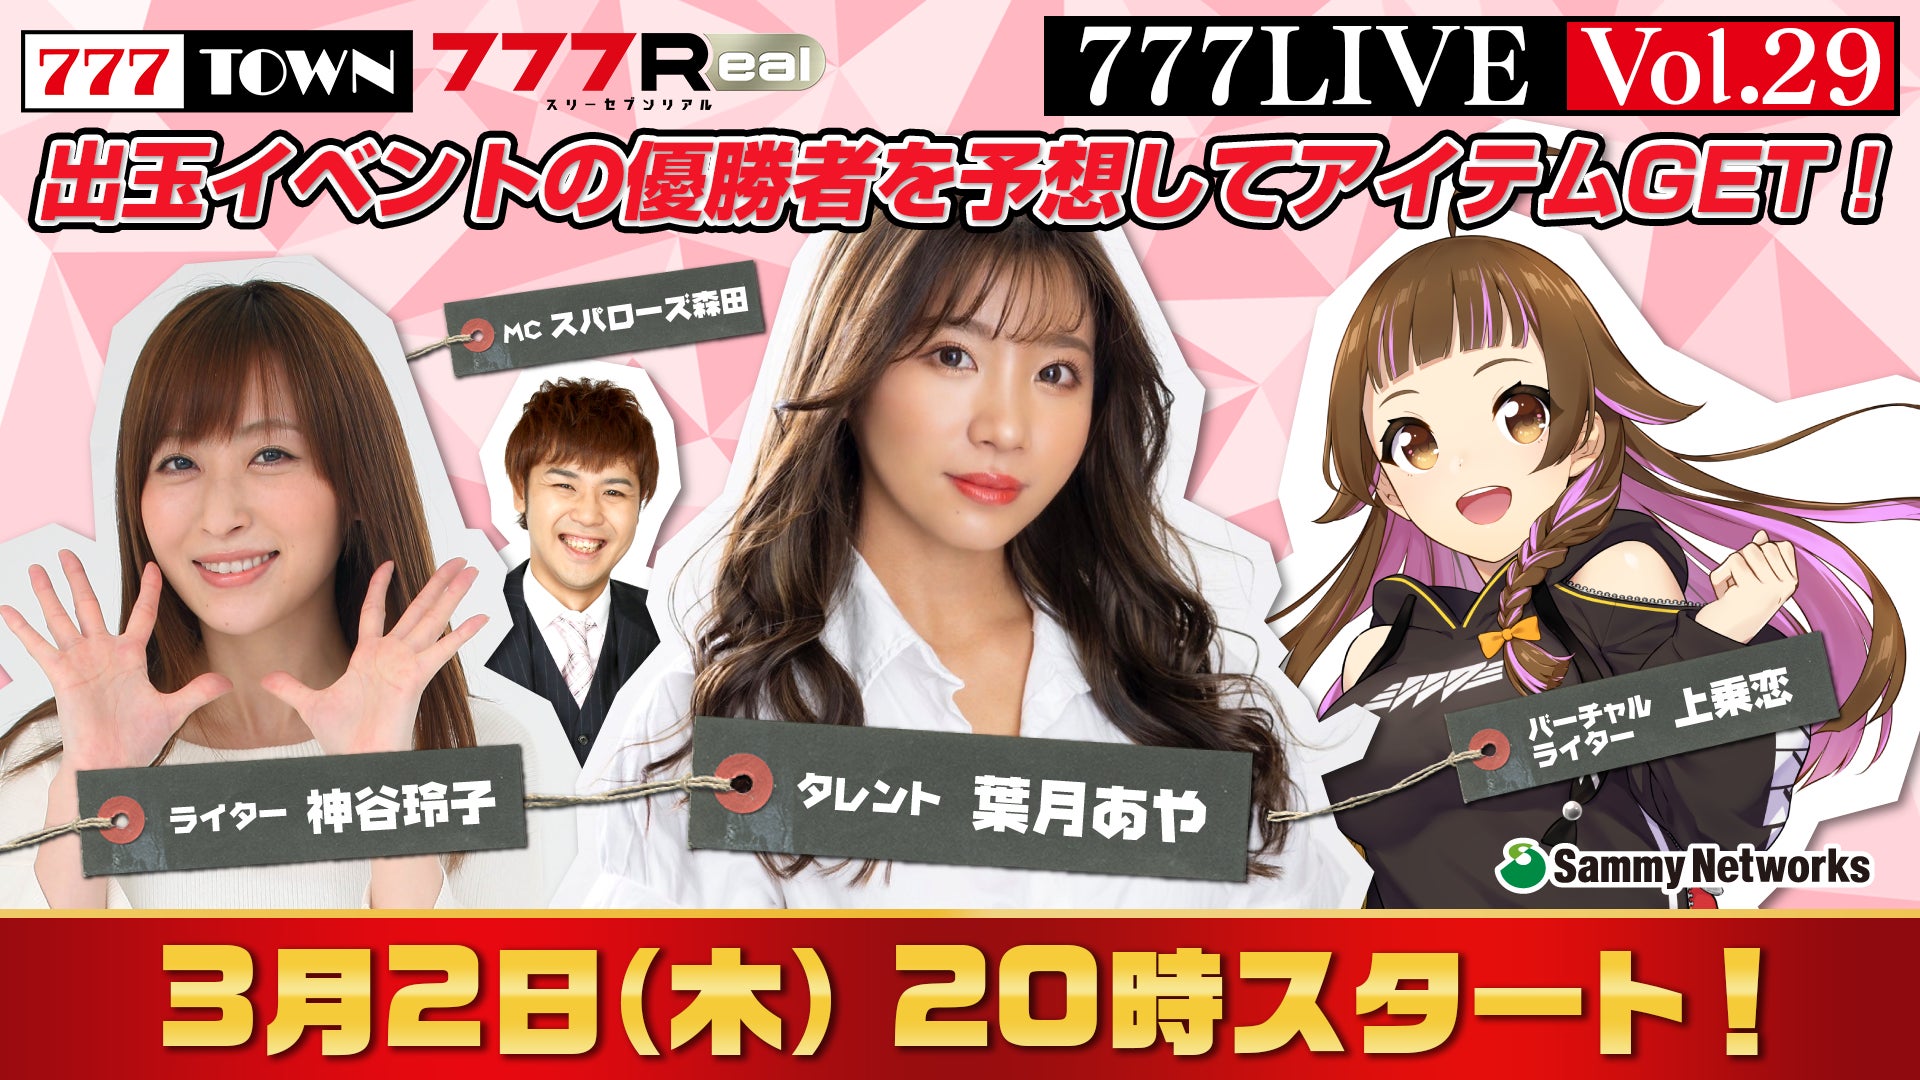 葉月あや、神谷玲子がゲスト出演！3月2日（木）20時から「777LIVE Vol.29」生放送